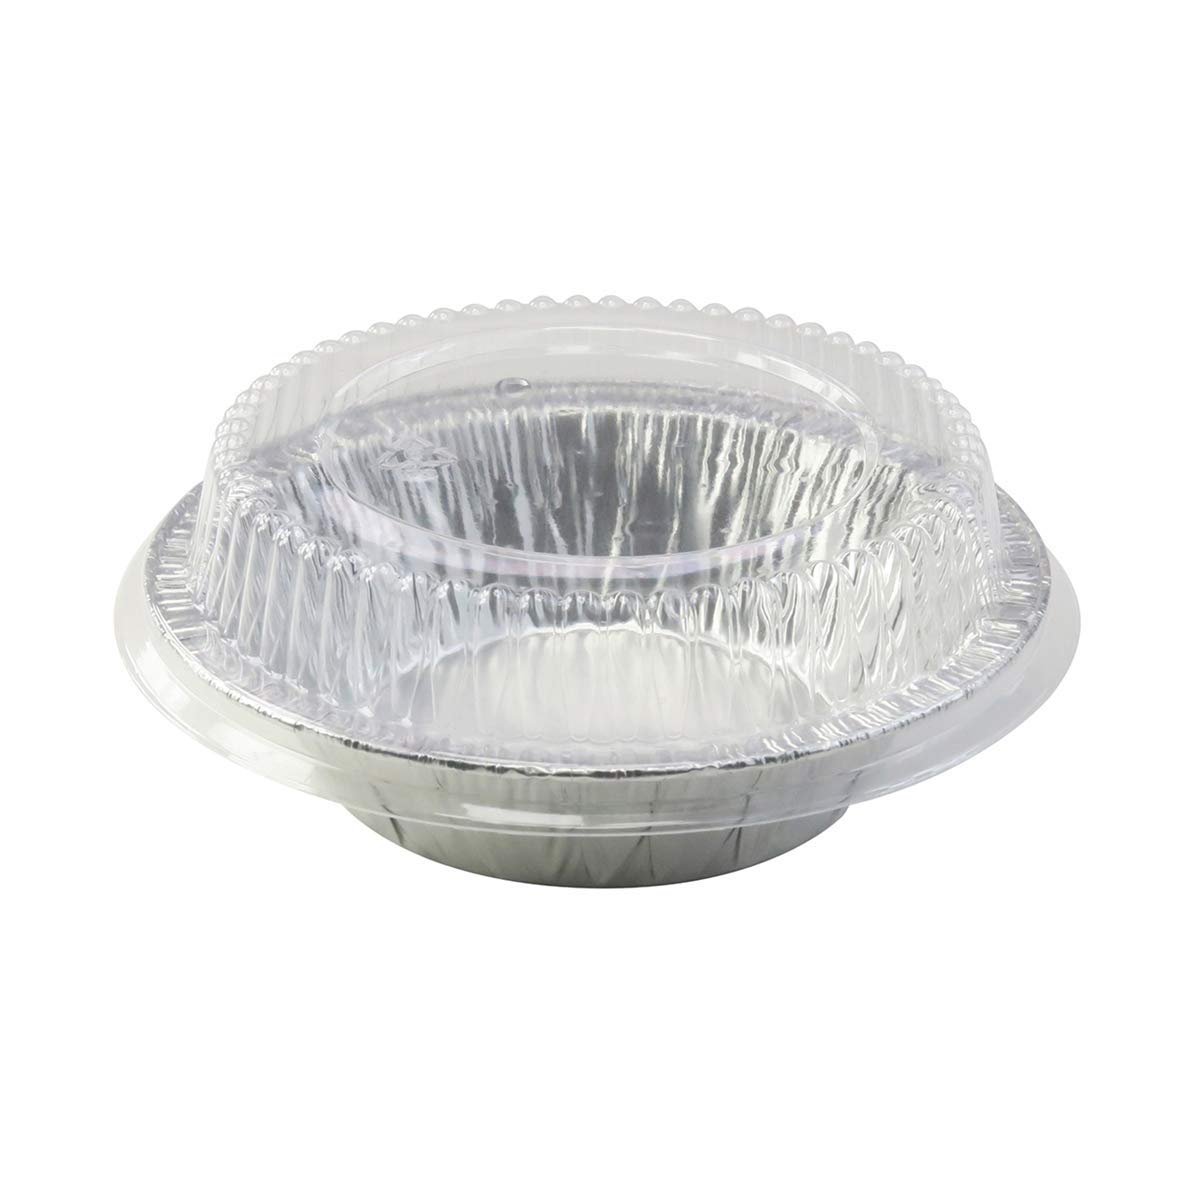 KitchenDance Disposable Aluminum Foil Tart Pan with Lid - 5" Aluminum Foil Individual Pie Pans, Baking Pan Perfect for Pies, Cobblers - 501P, (25)